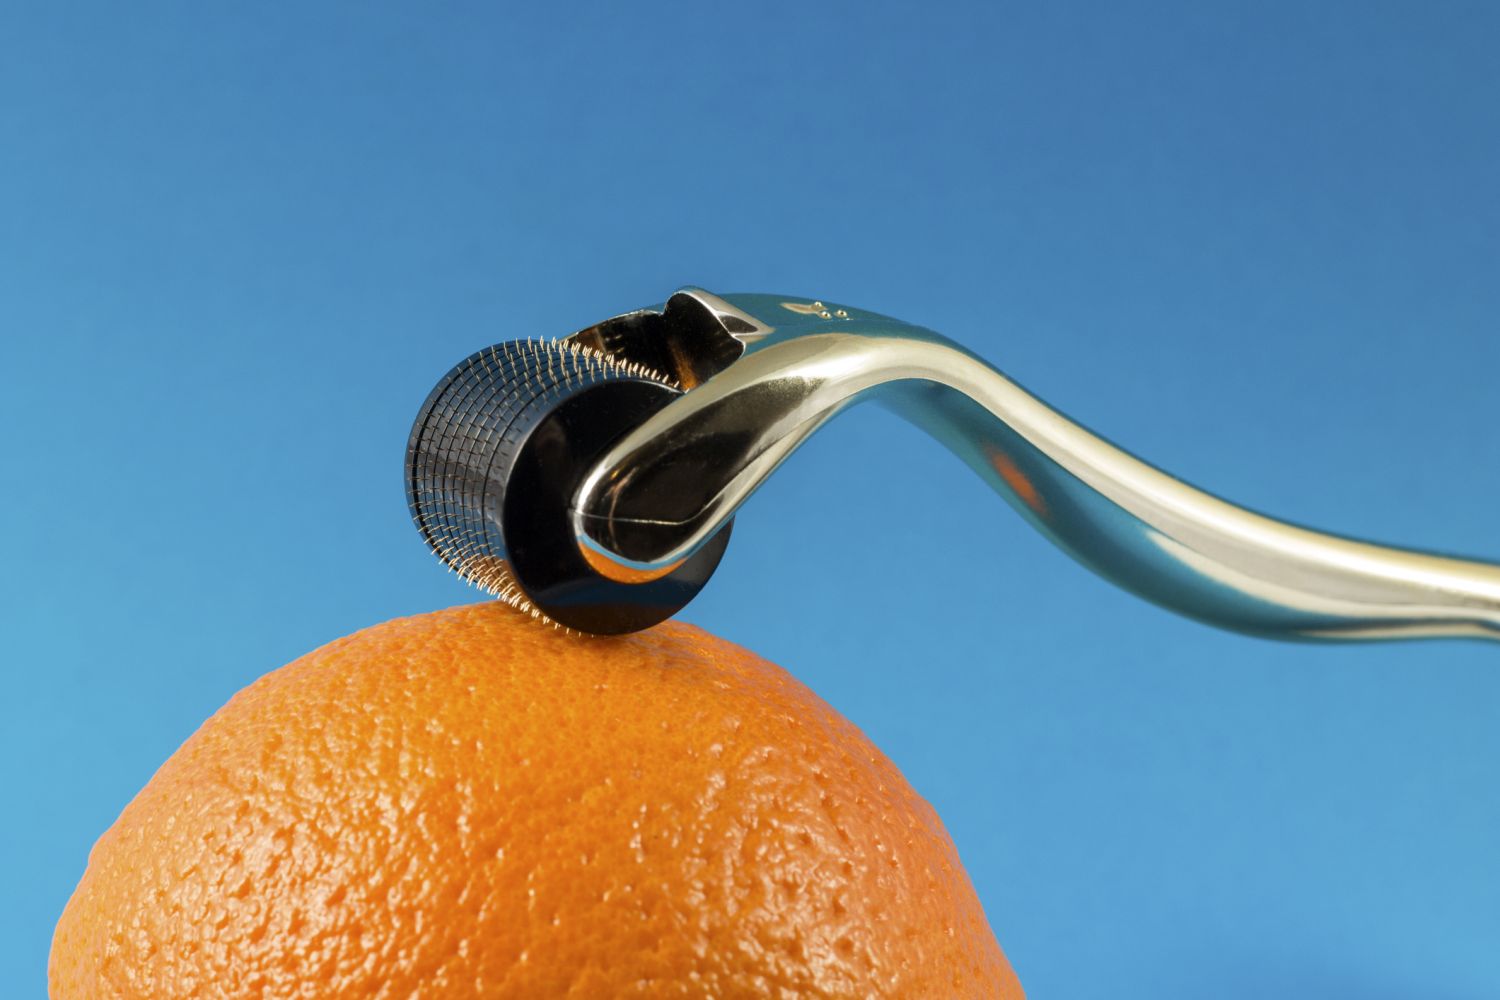 Microneedling-Roller auf einer Orange. Thema: Mittel gegen Cellulite